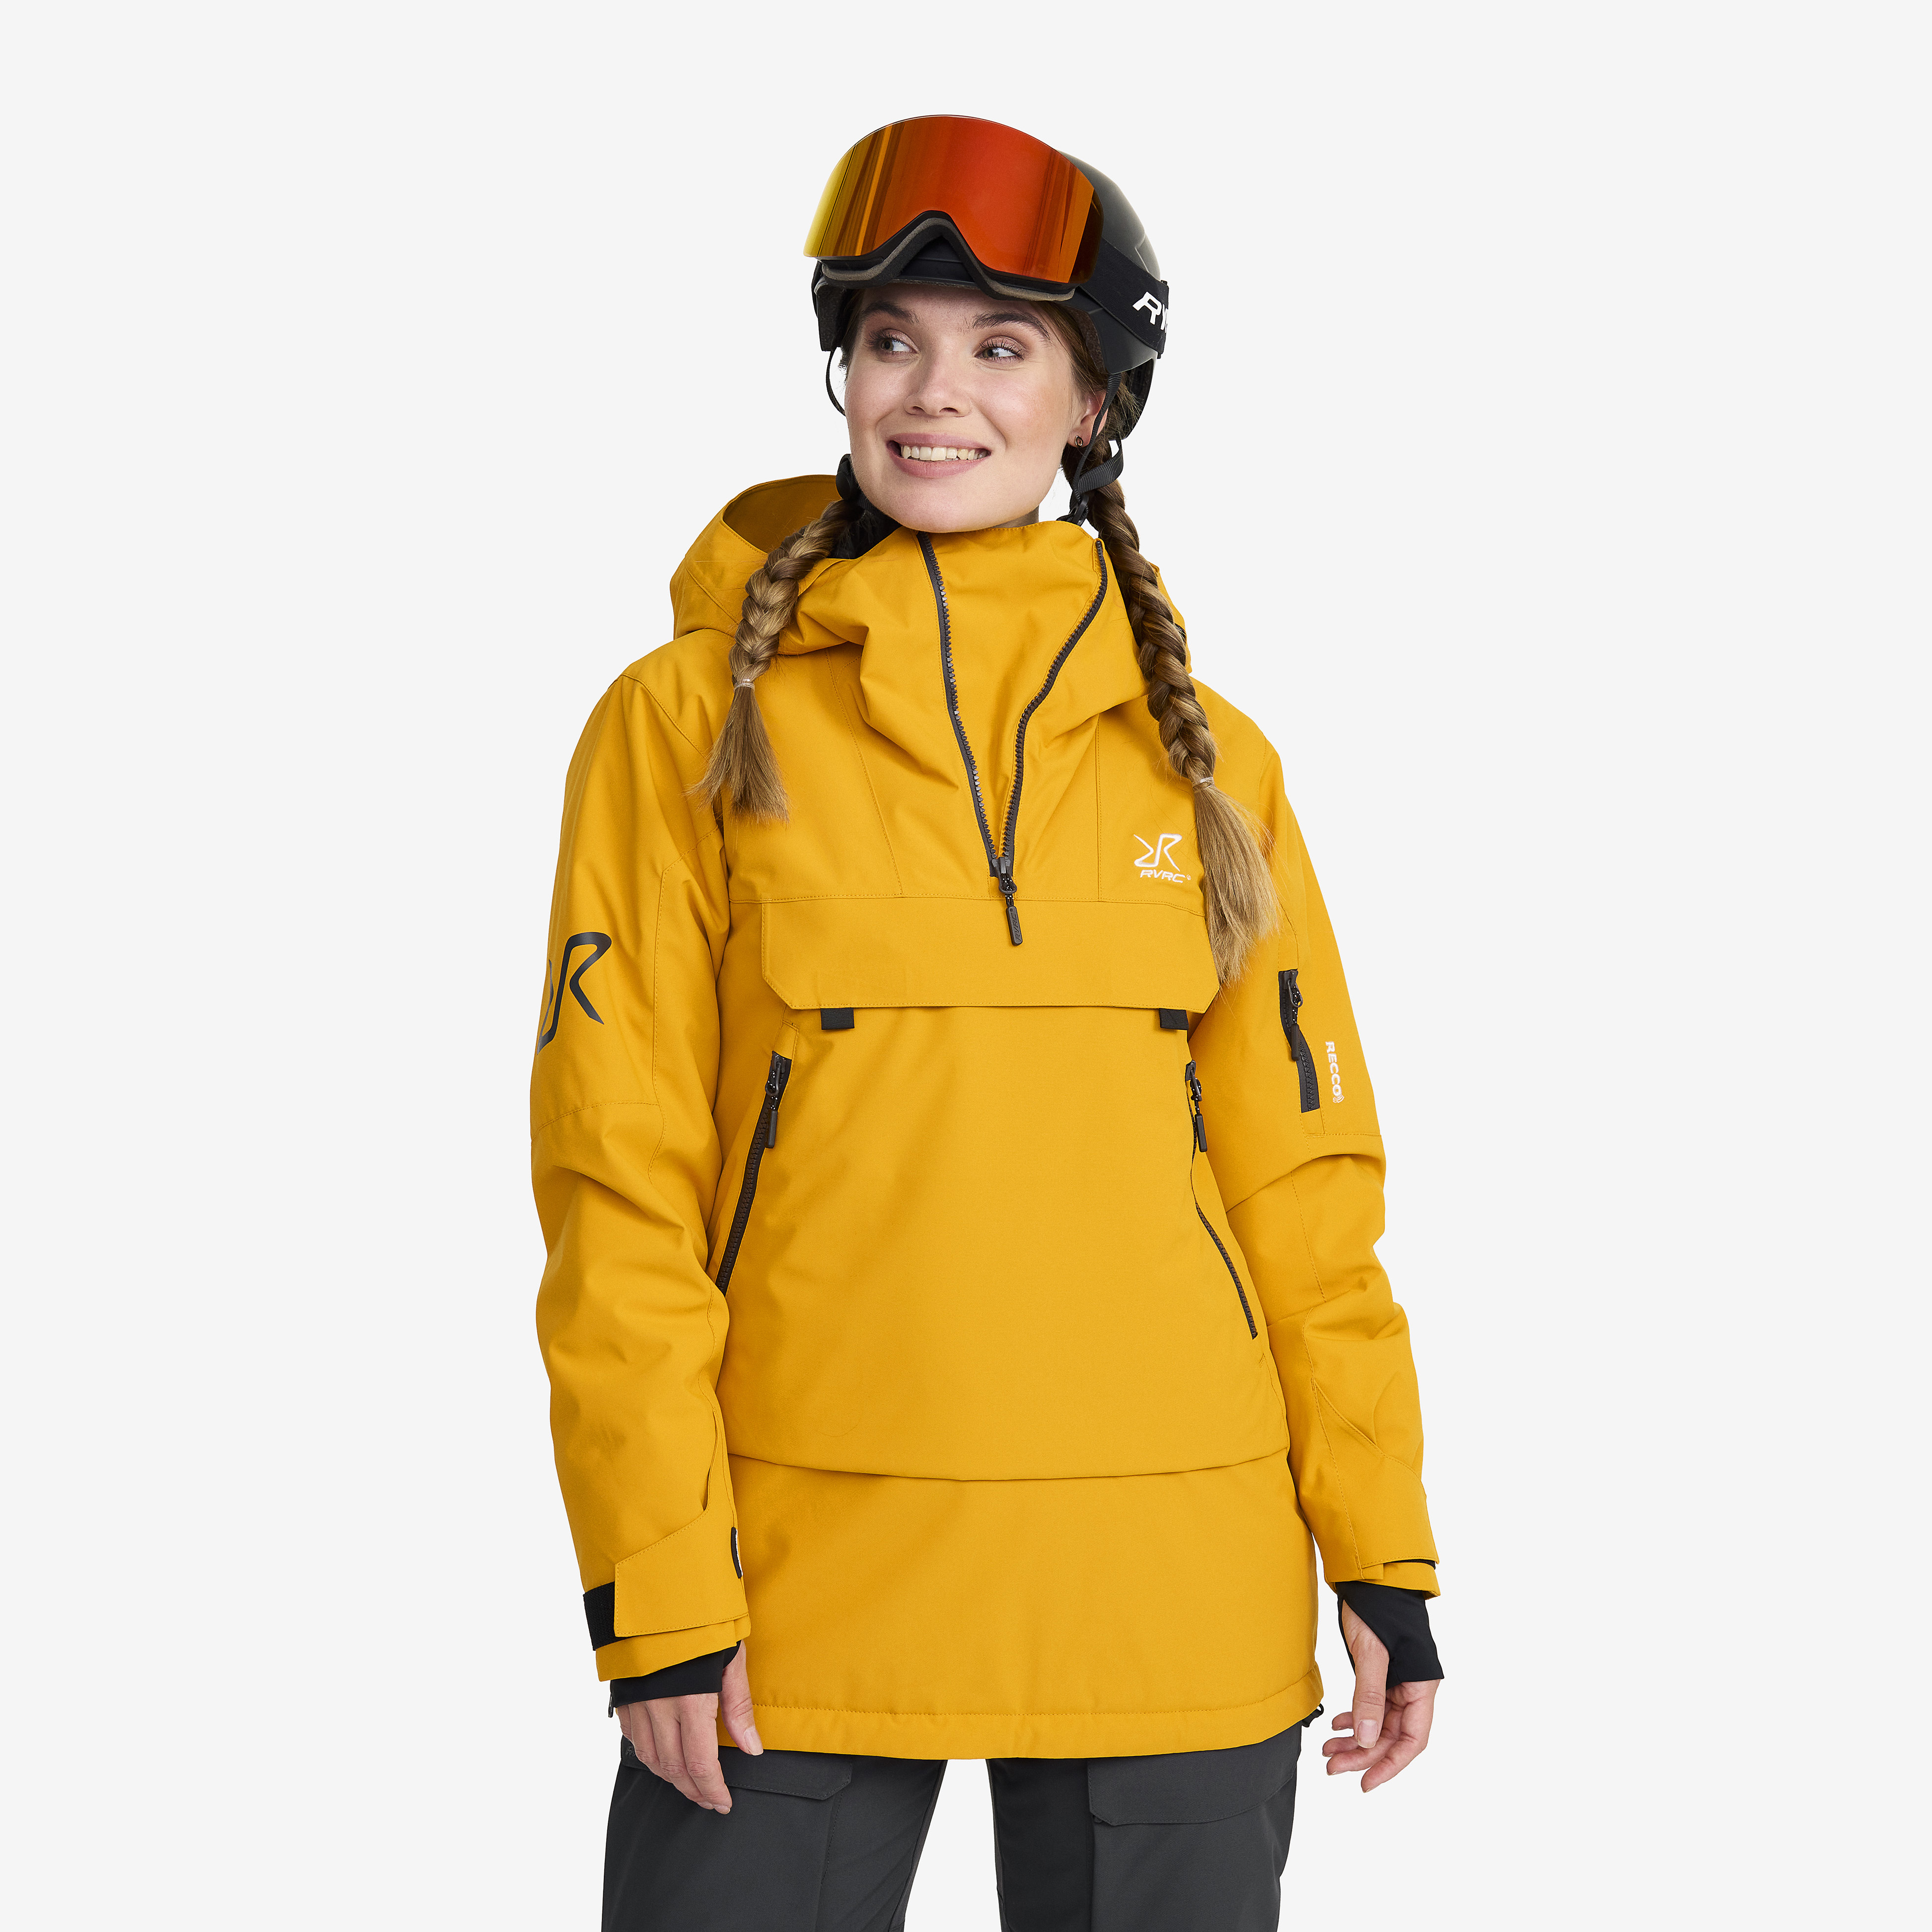 Halo 2L Insulated Ski Anorak Golden Yellow Women